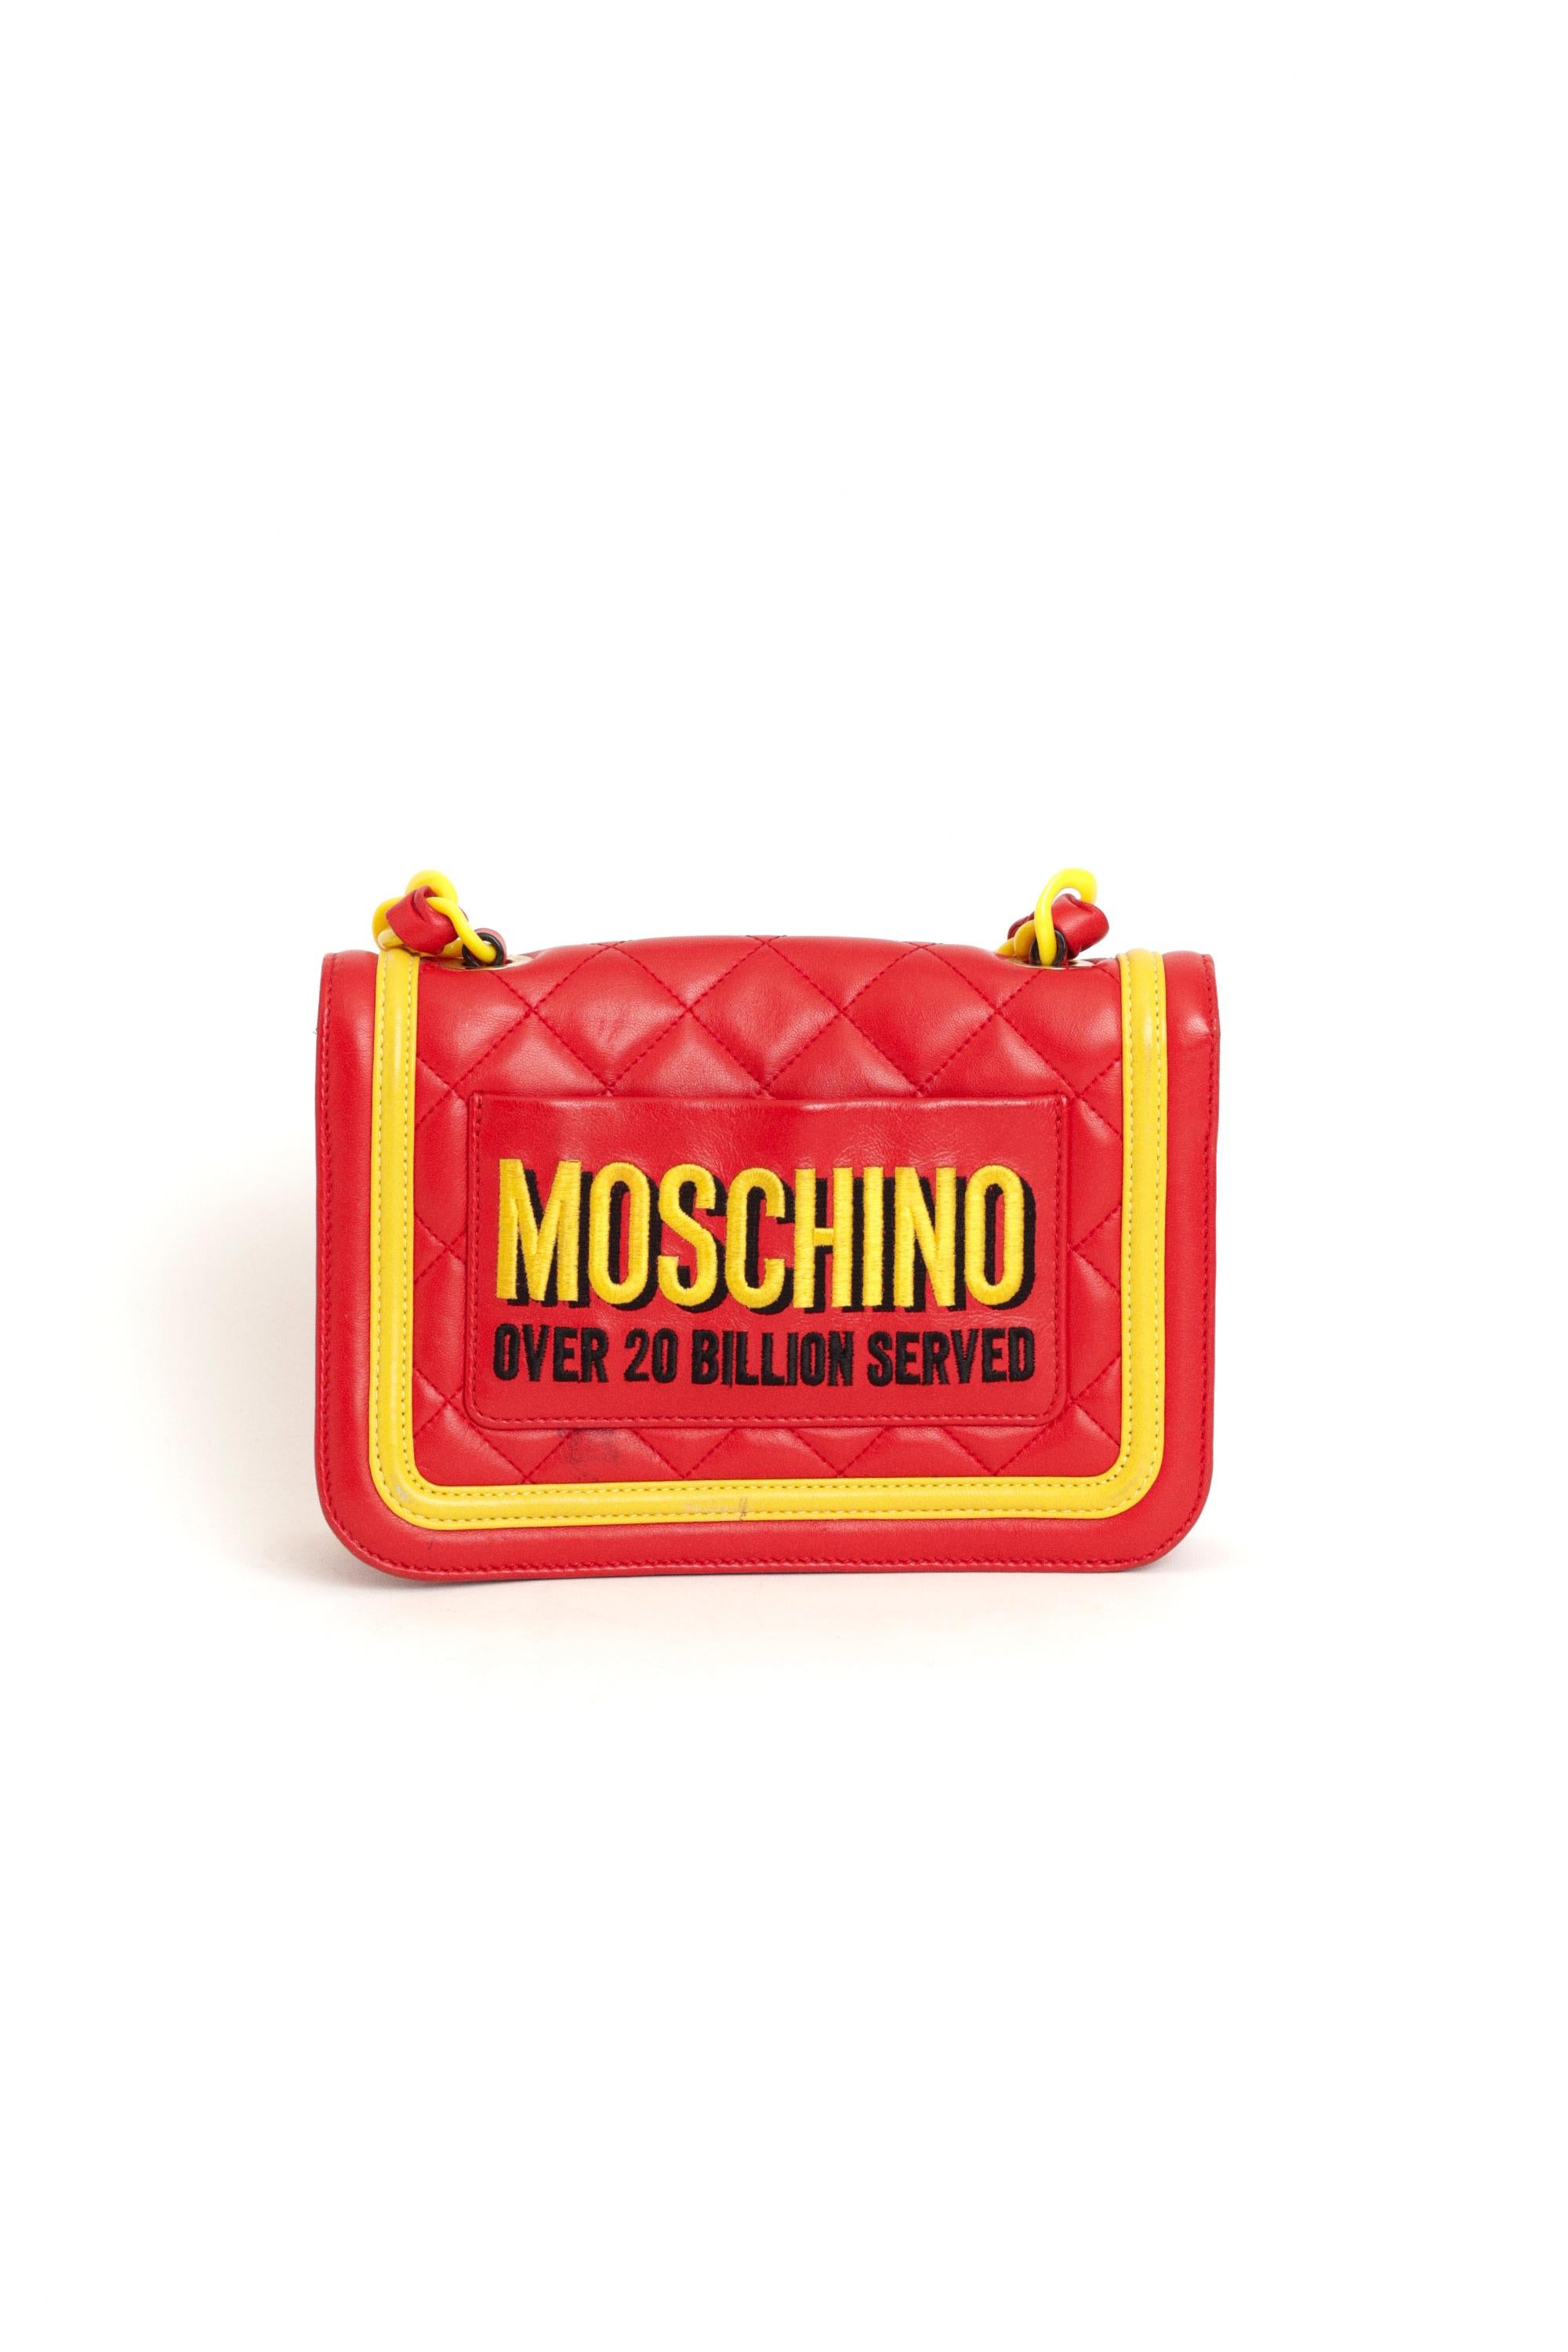 Moschino Herbst Winter 2014 McDonald's Crossbody Bag aus rotem Leder, aus der The FastFood Collection'S von Jeremy Scott. Mit Kettenriemen, zwei Innenfächern, einer Innentasche mit Reißverschluss auf der Rückseite und einer Außentasche auf der